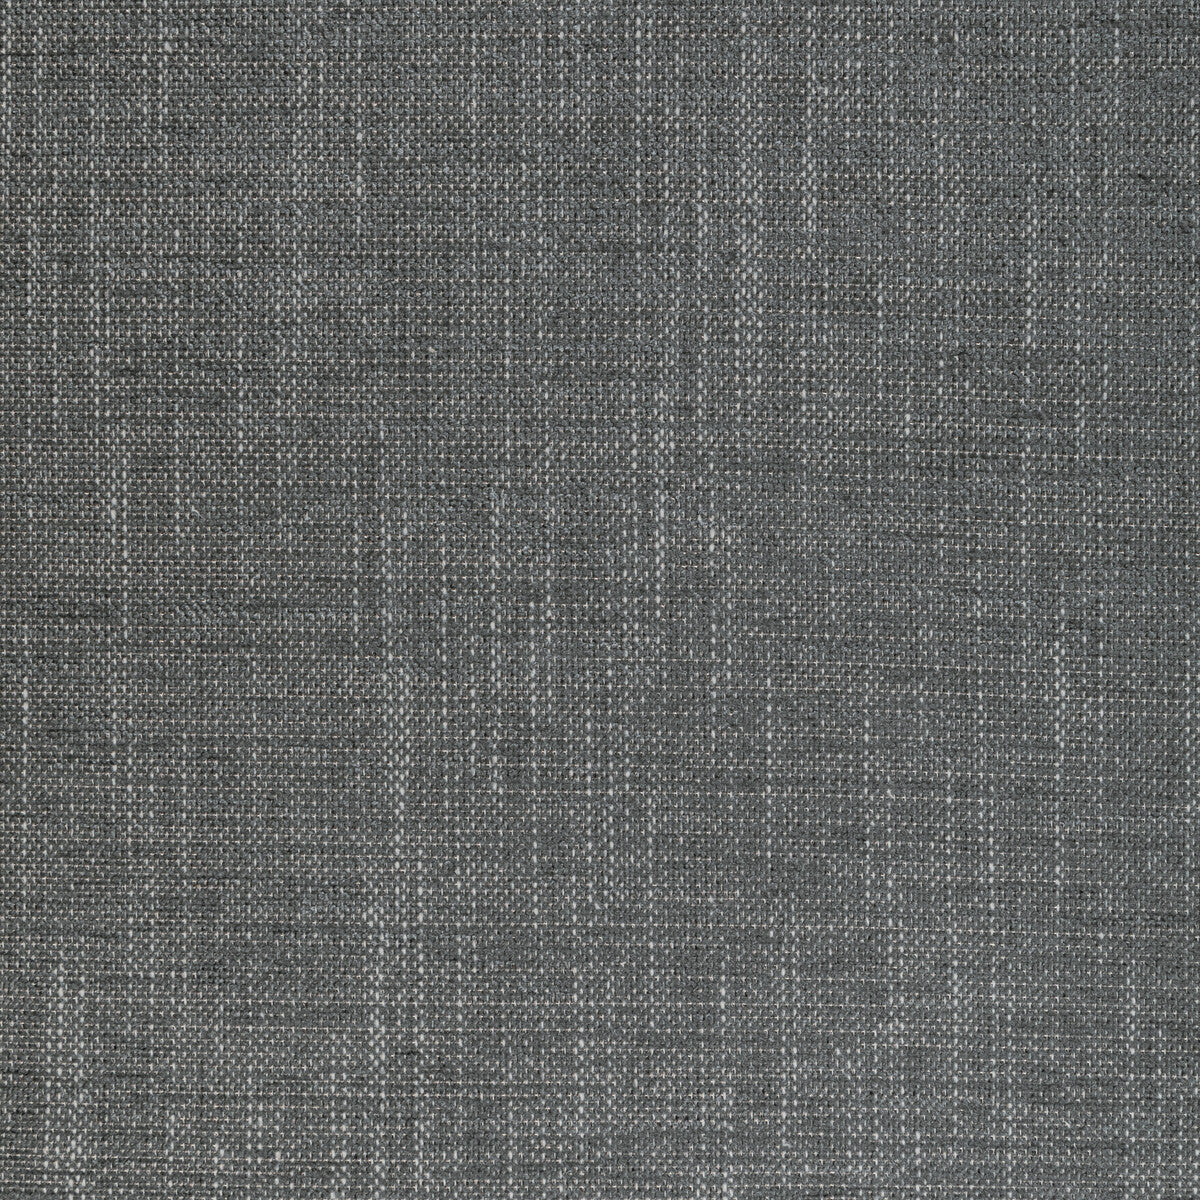 Poet Plain fabric in graphite color - pattern 36649.11.0 - by Kravet Basics